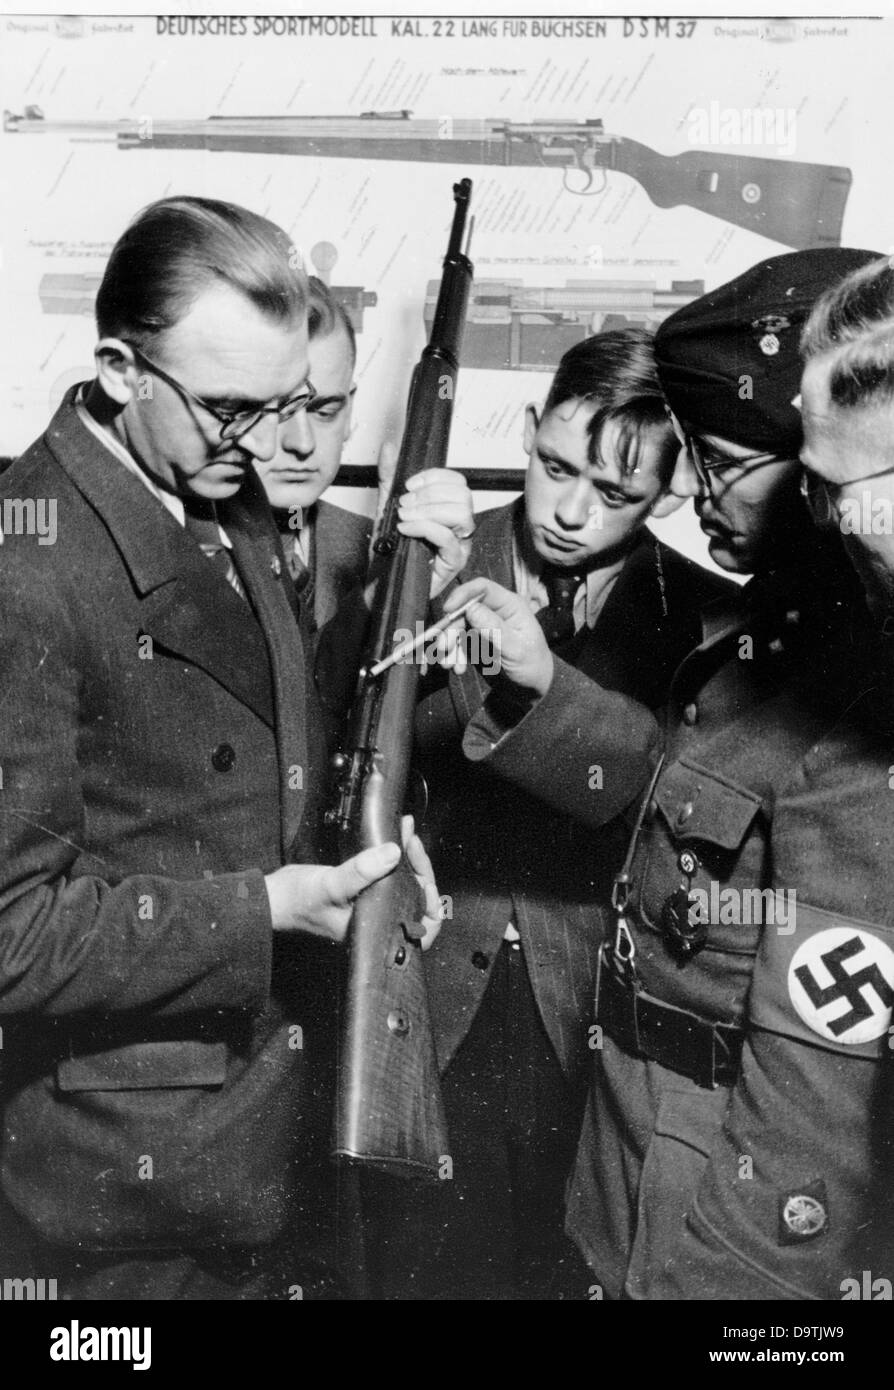 Hitler les jeunes garçons sont vantant comment utiliser une arme, au National socialiste Motor corps (NSKK), en janvier 1940. Fotoarchiv für Zeitgeschichte Banque D'Images